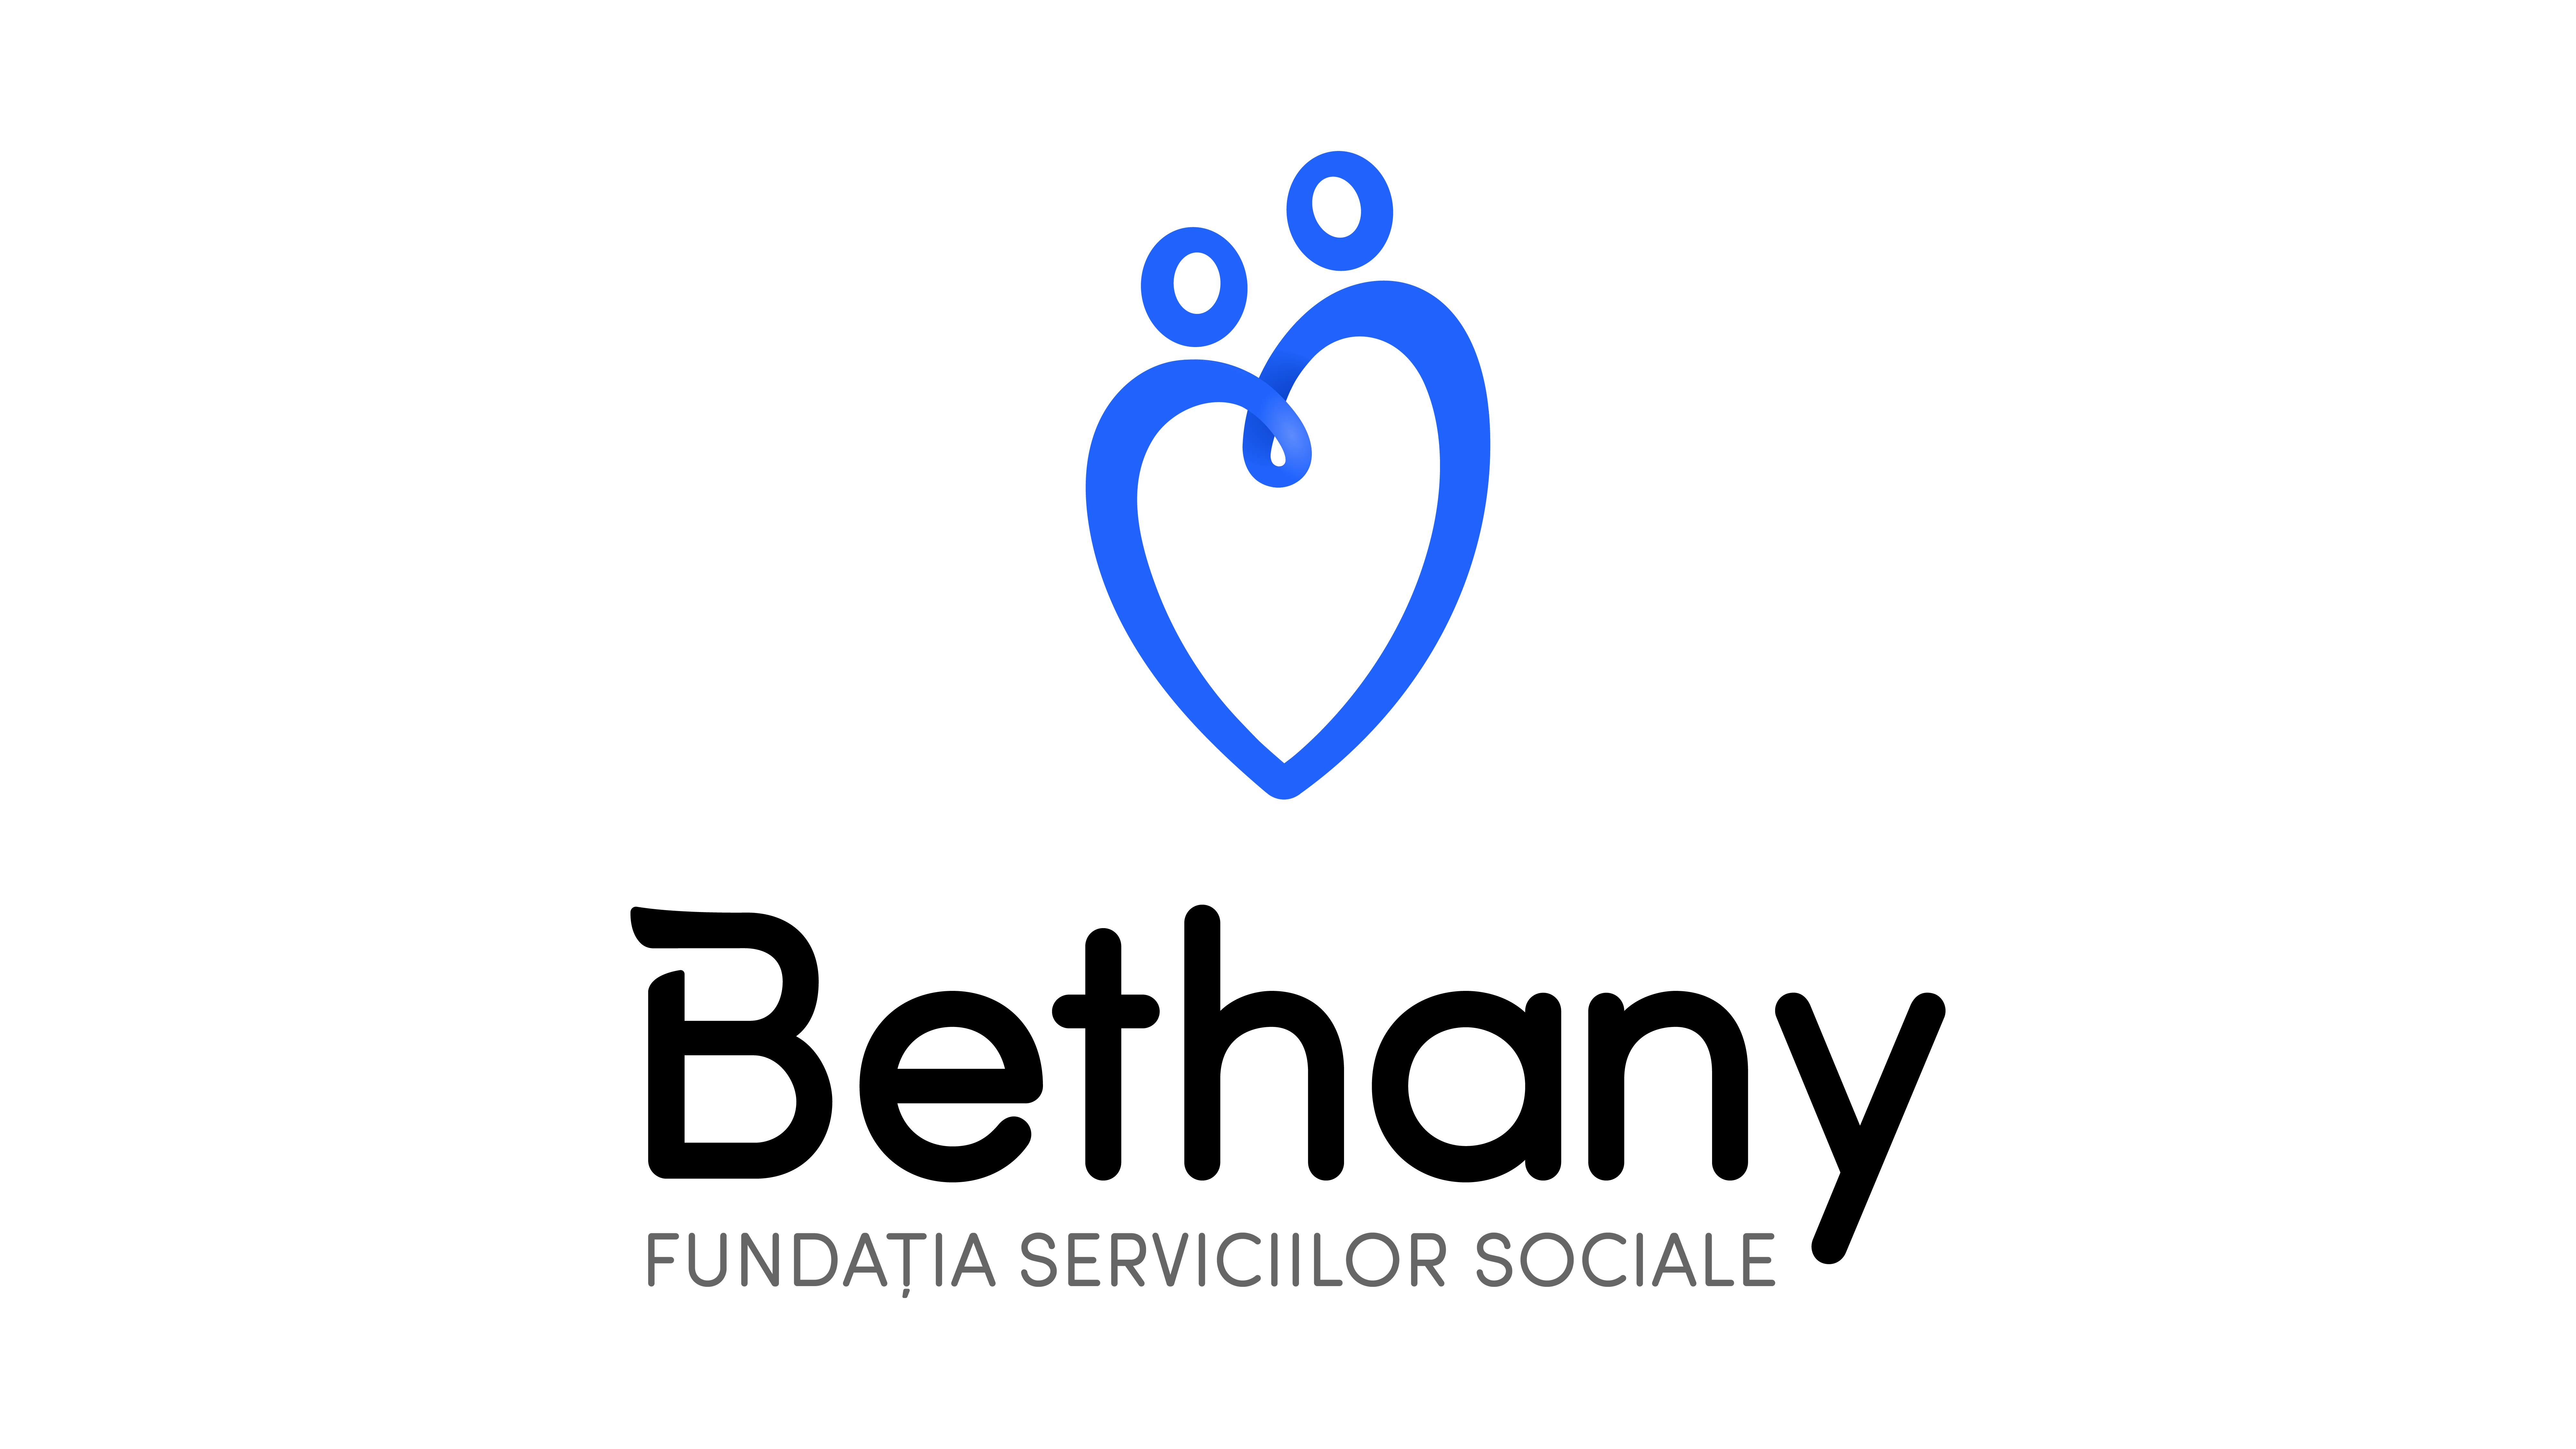 Fundatia Serviciilor Sociale Bethany logo